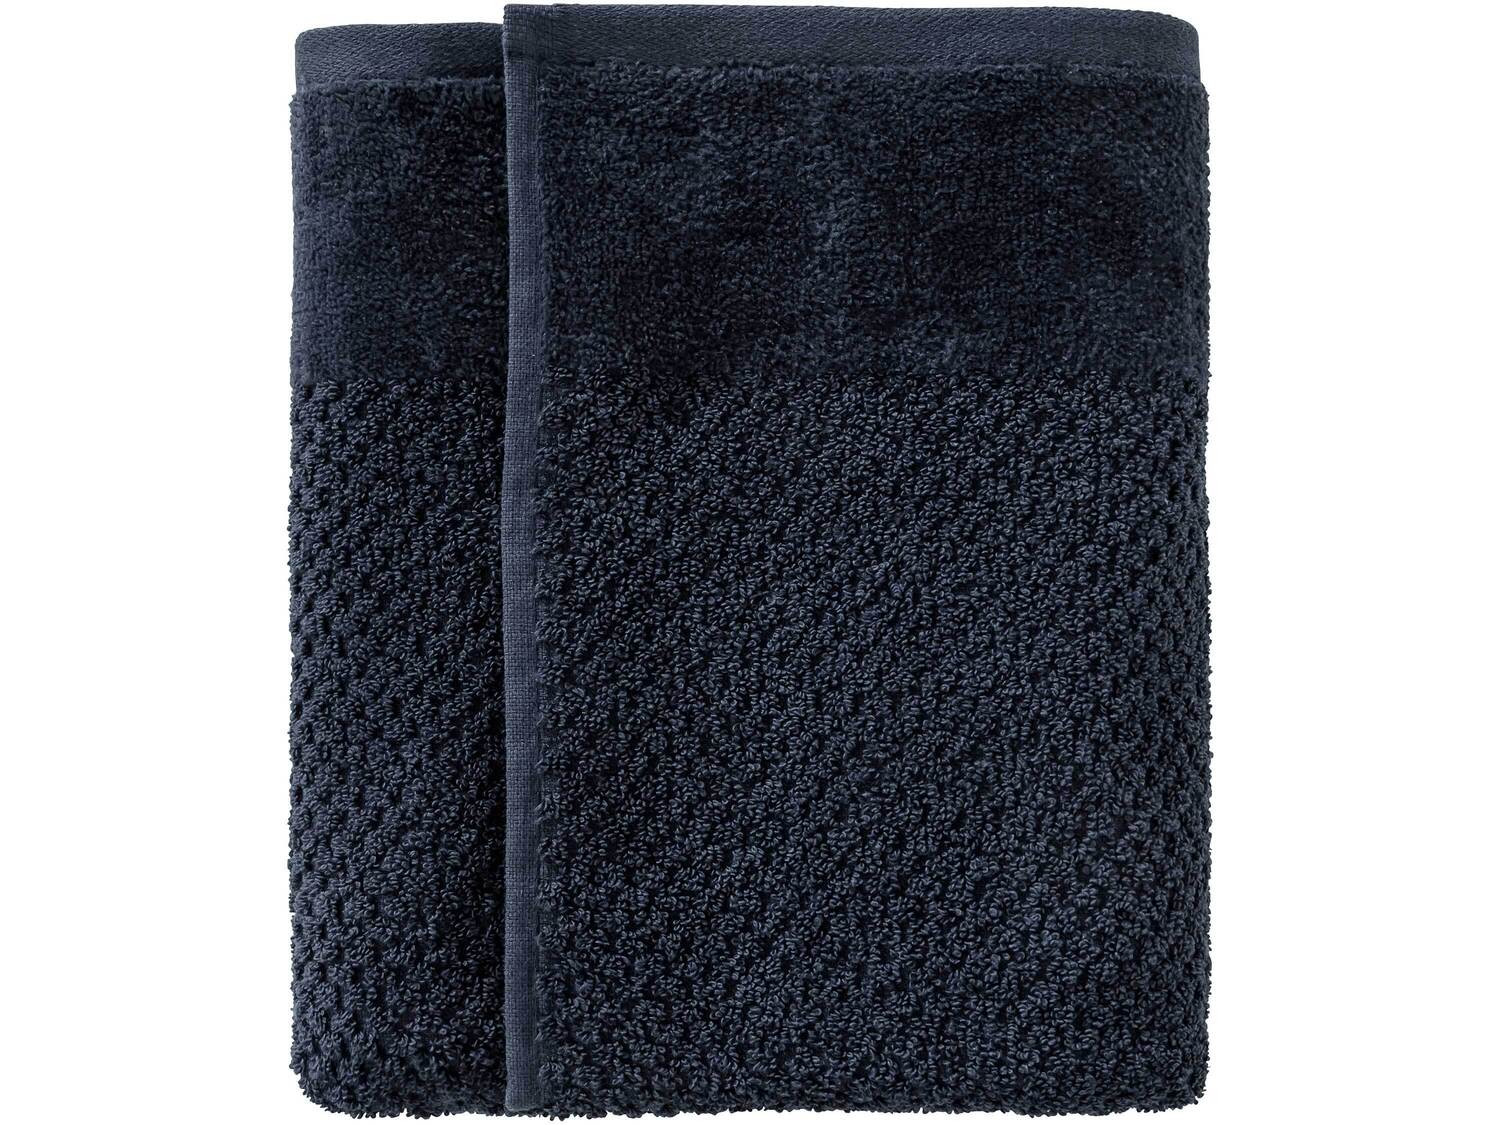 Ręcznik 50 x 100 cm Miomare, cena 7,99 PLN 
- 450 g/m2
- 100% bawełny
- miękkie ...